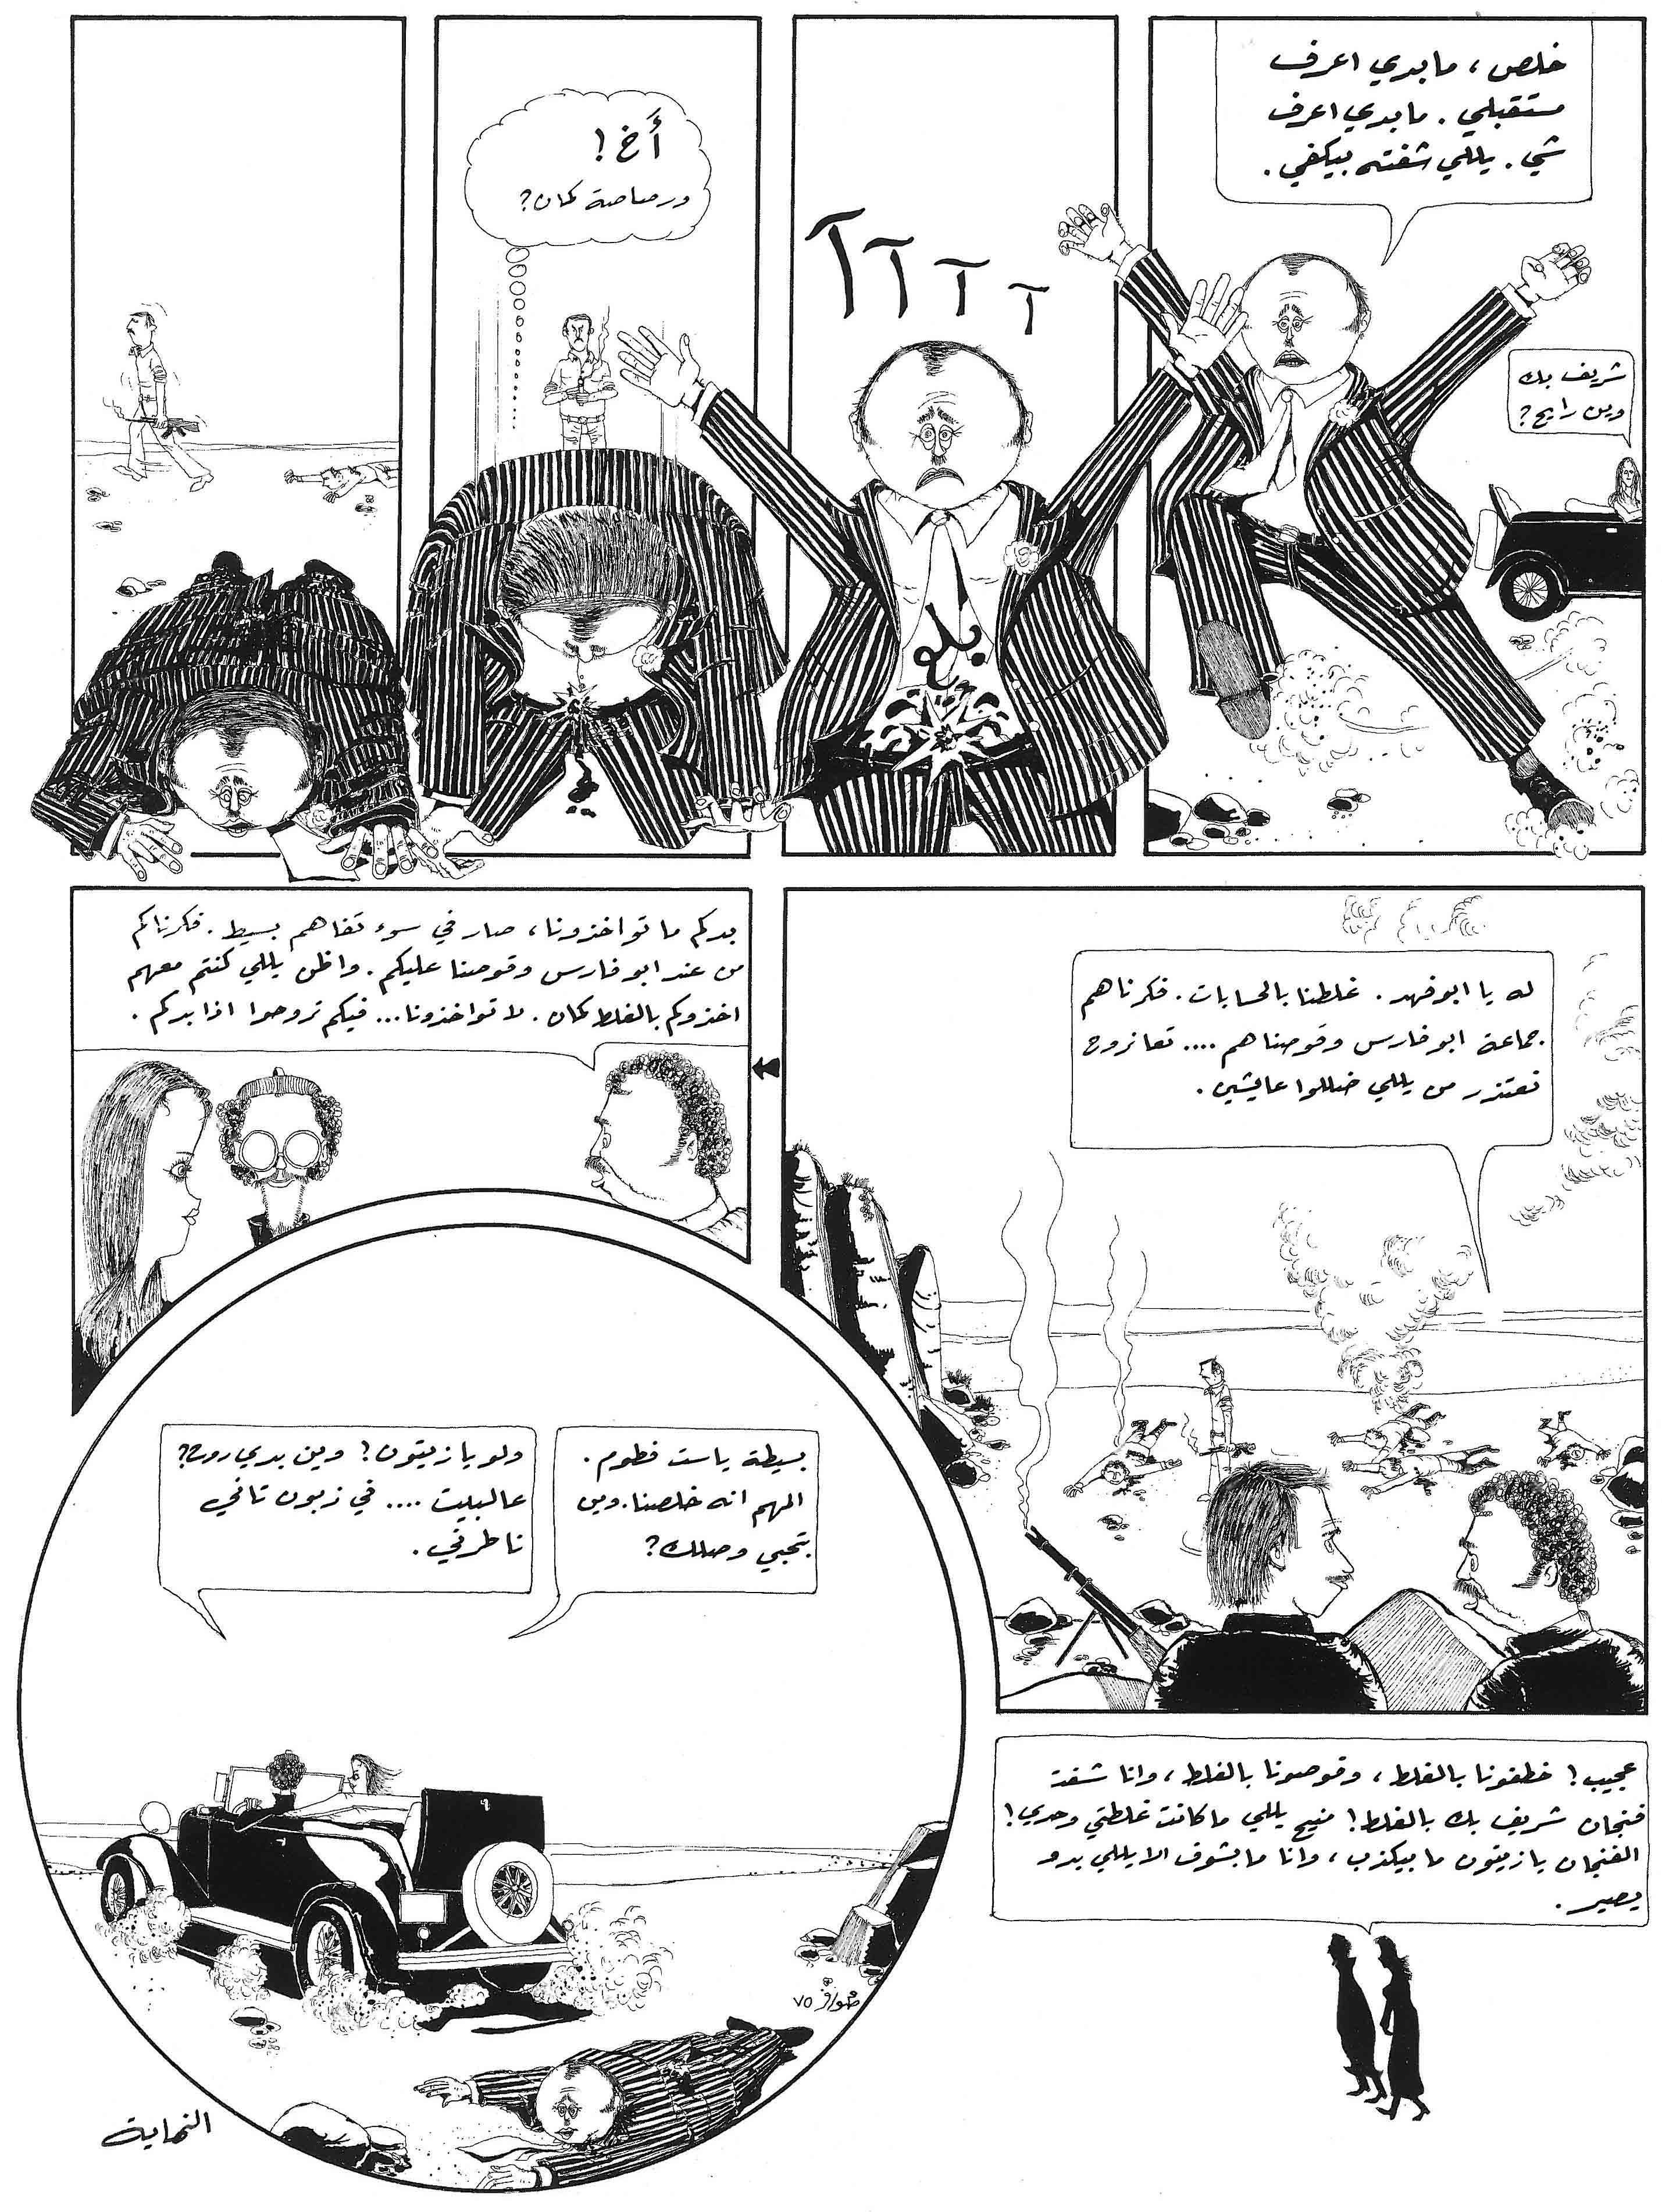 works_on_comics_in_Lebanon-7.jpg